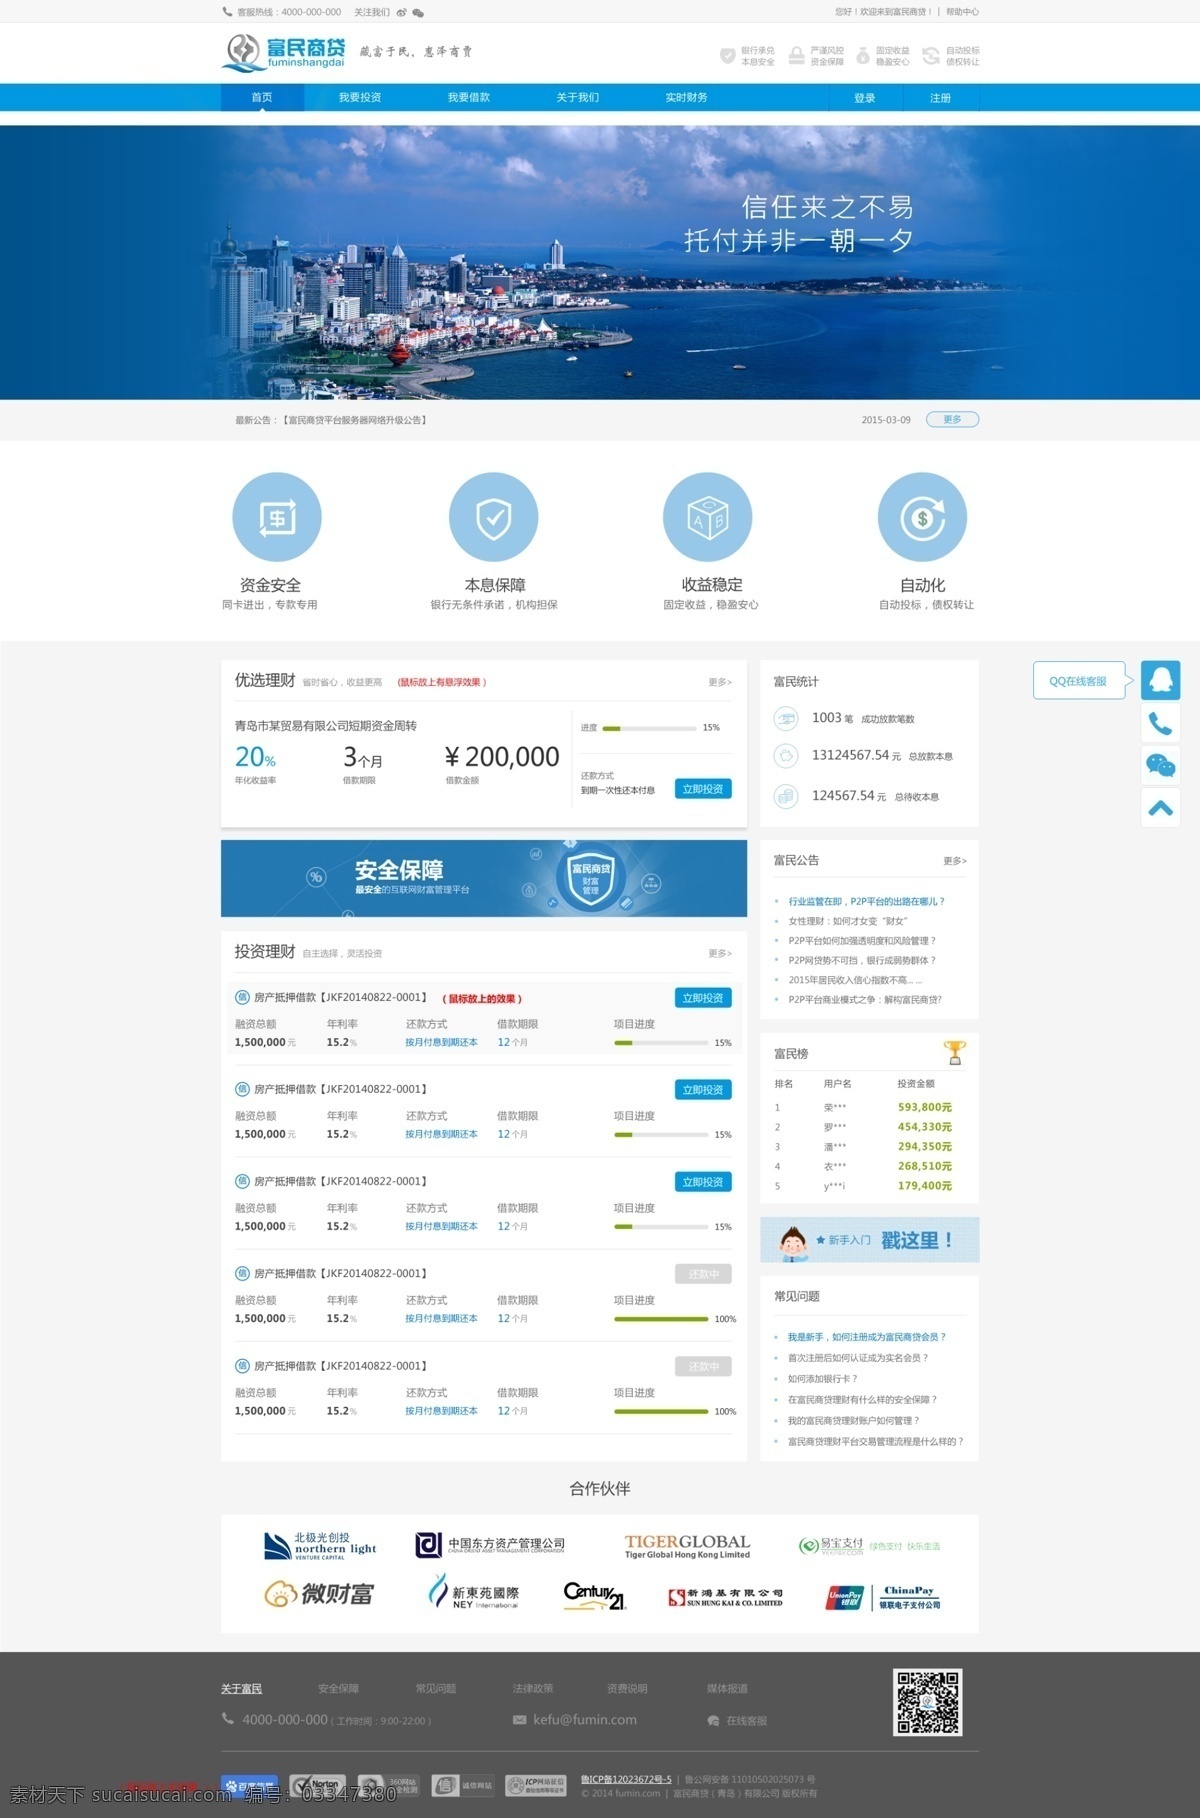 蓝色 投资理财 行业 网站 投资 理财 模板 web 界面设计 中文模板 白色